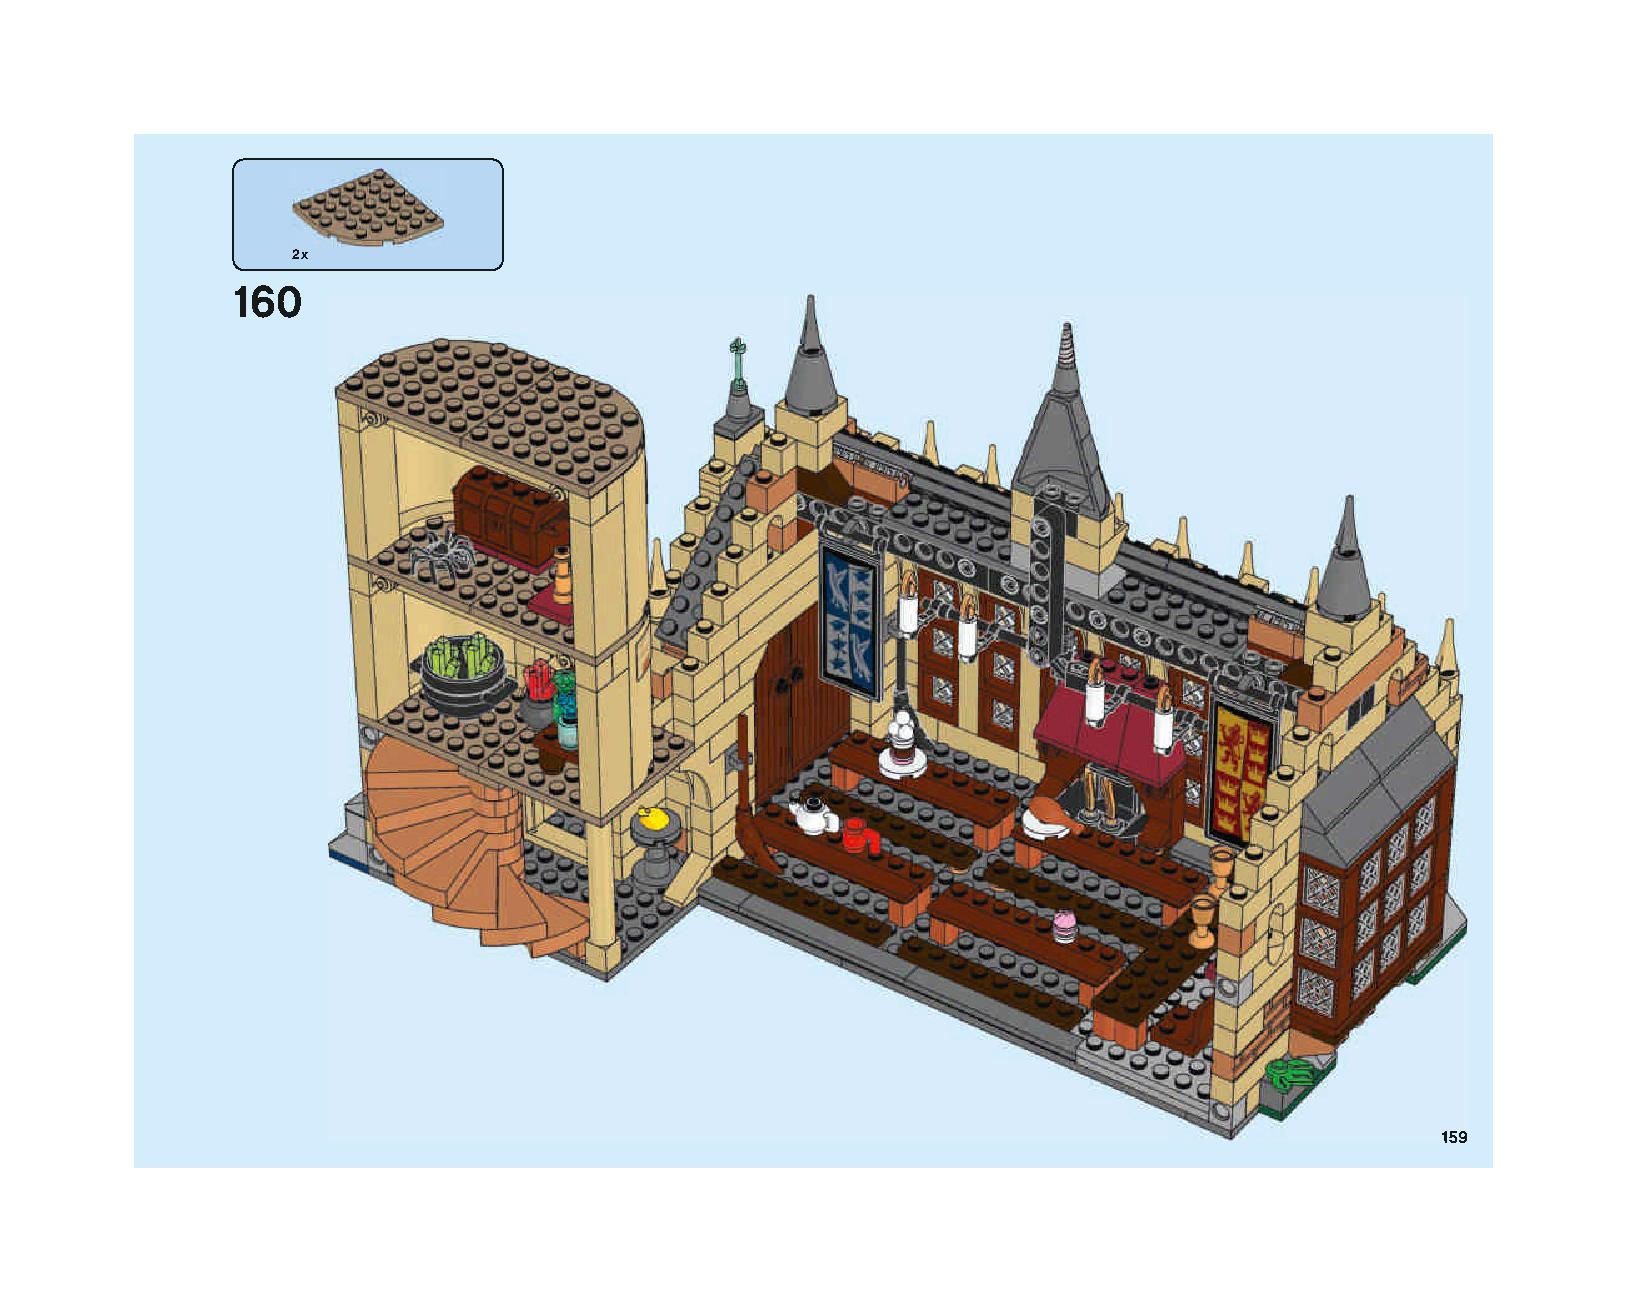 ホグワーツの大広間 75954 レゴの商品情報 レゴの説明書・組立方法 159 page